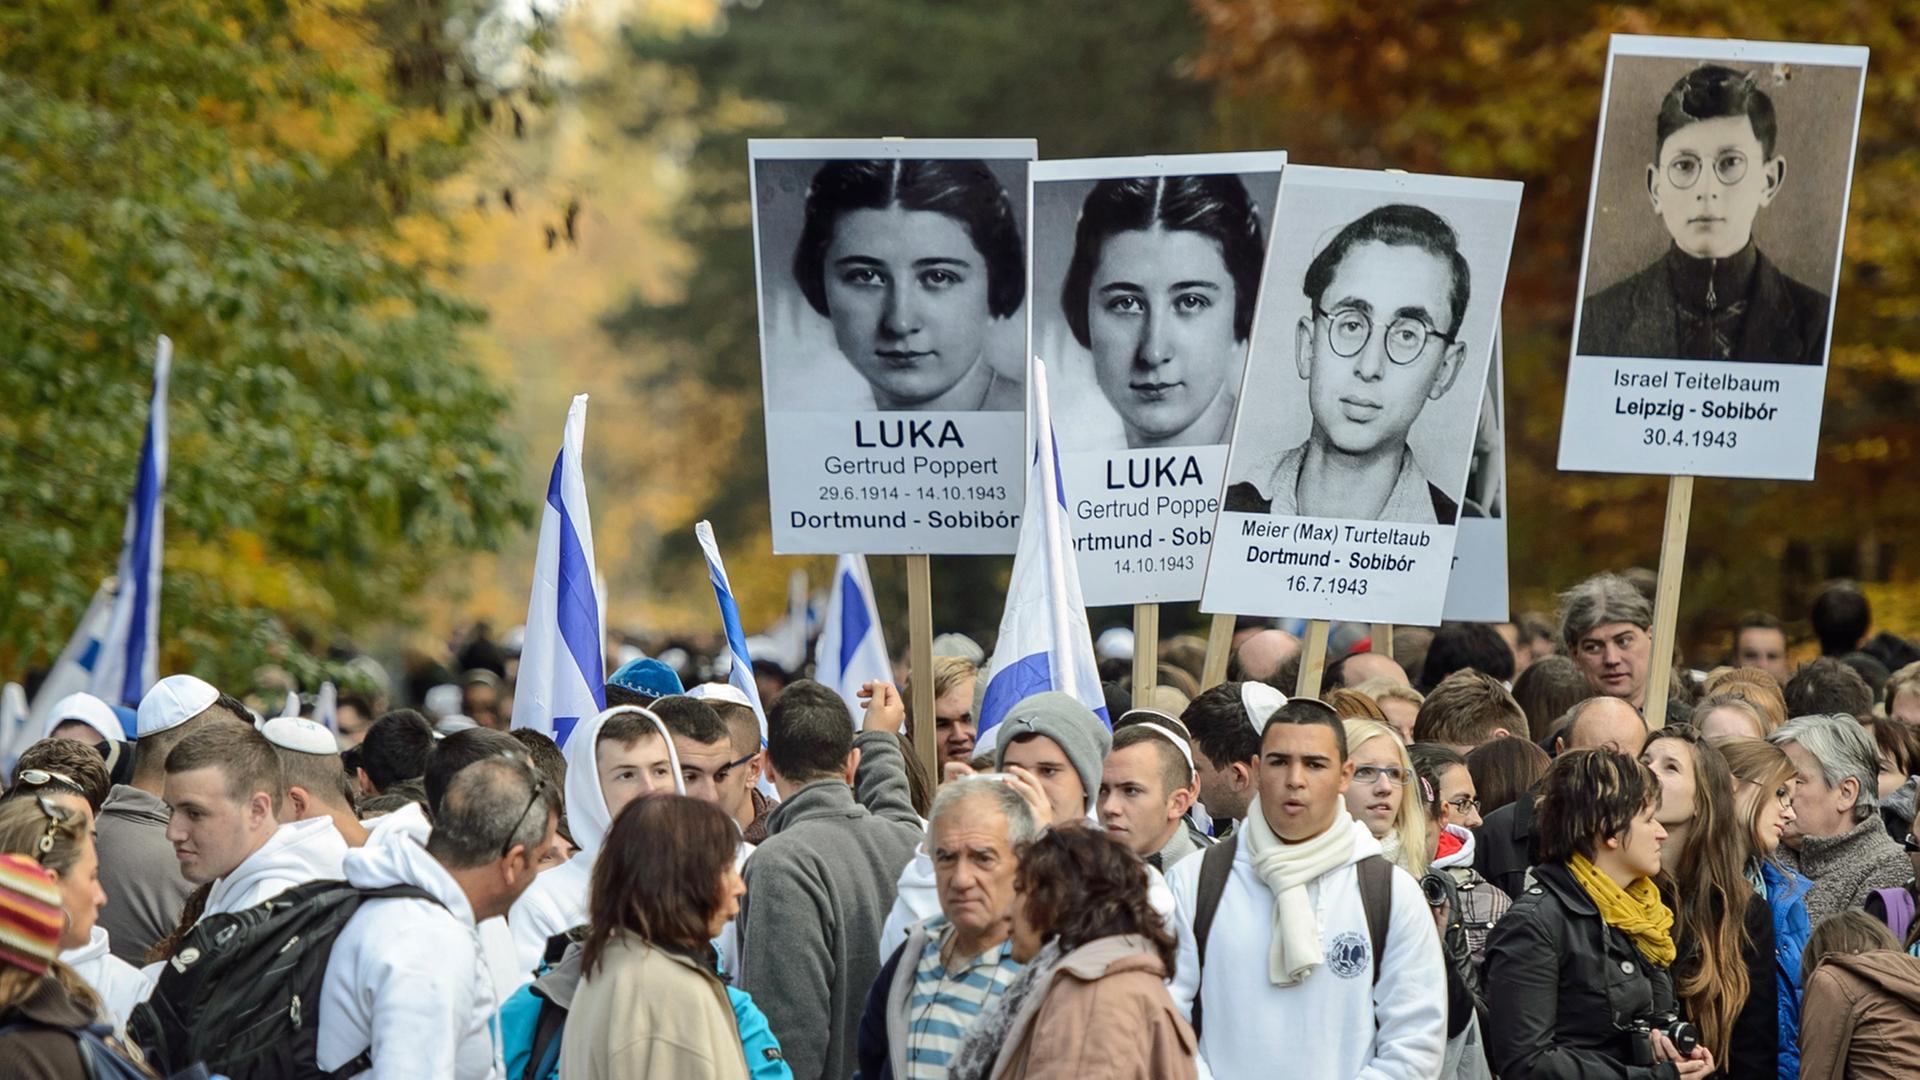 Teilnehmer einer Gedenkveranstaltung zum 70. Jubiläum des jüdischen Aufstandes im Konzentrationslager Sobibor am 14. Oktober 1943, aufgenommen 2013